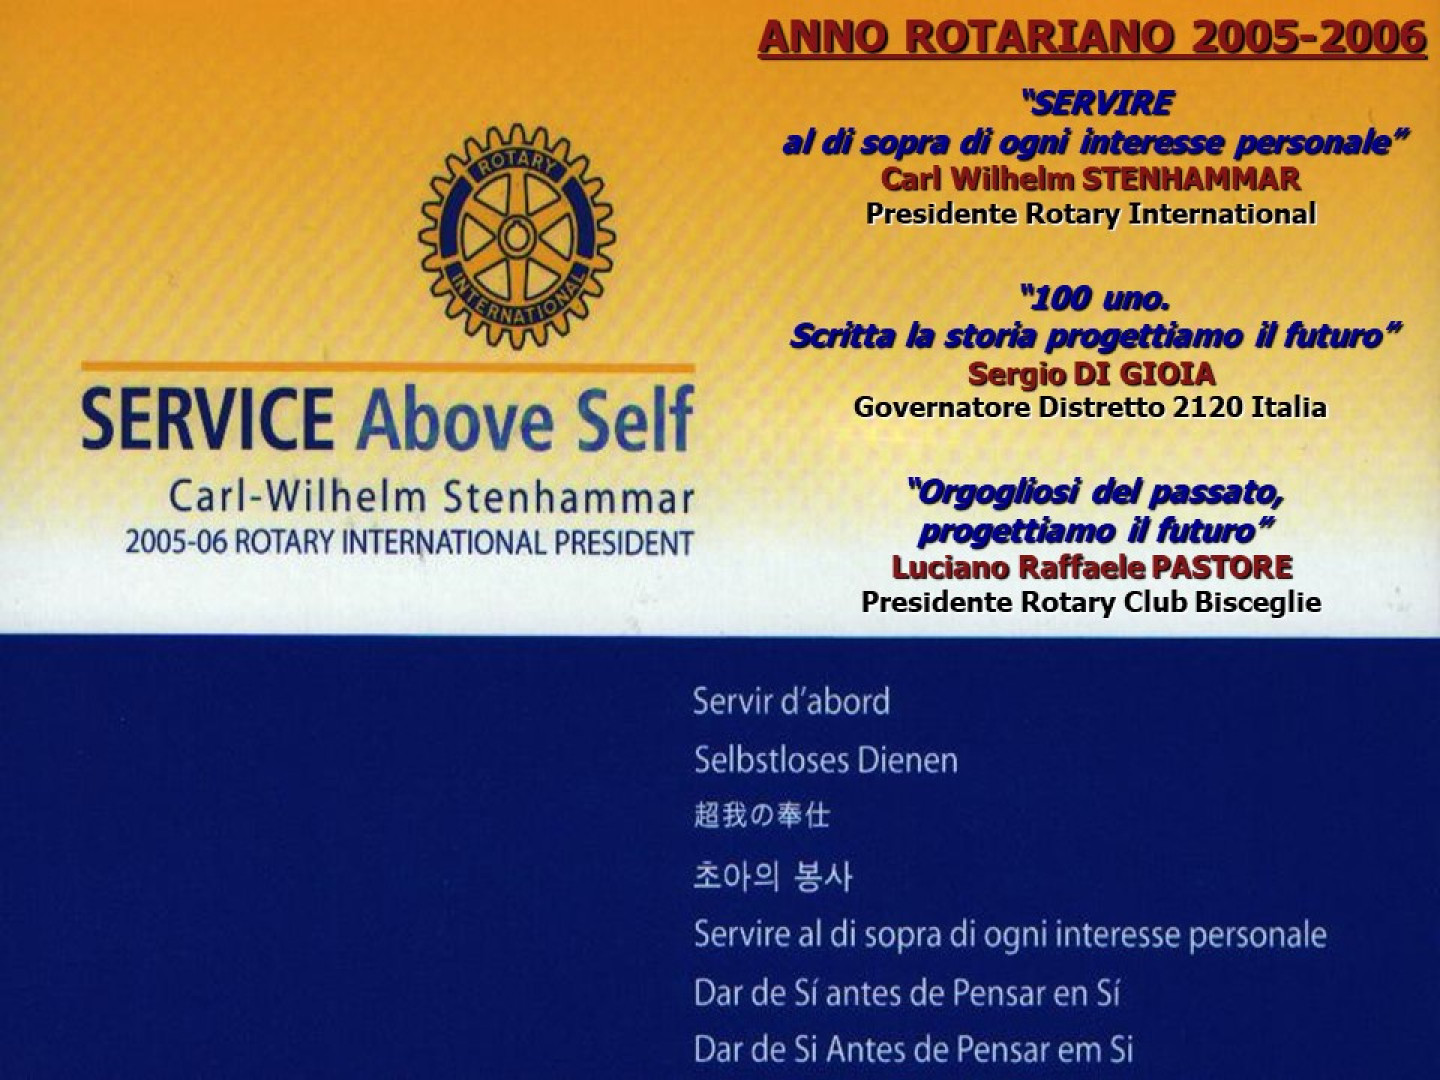 Le attività del Rotary Club Bisceglie nell'a.r. 2005-2006